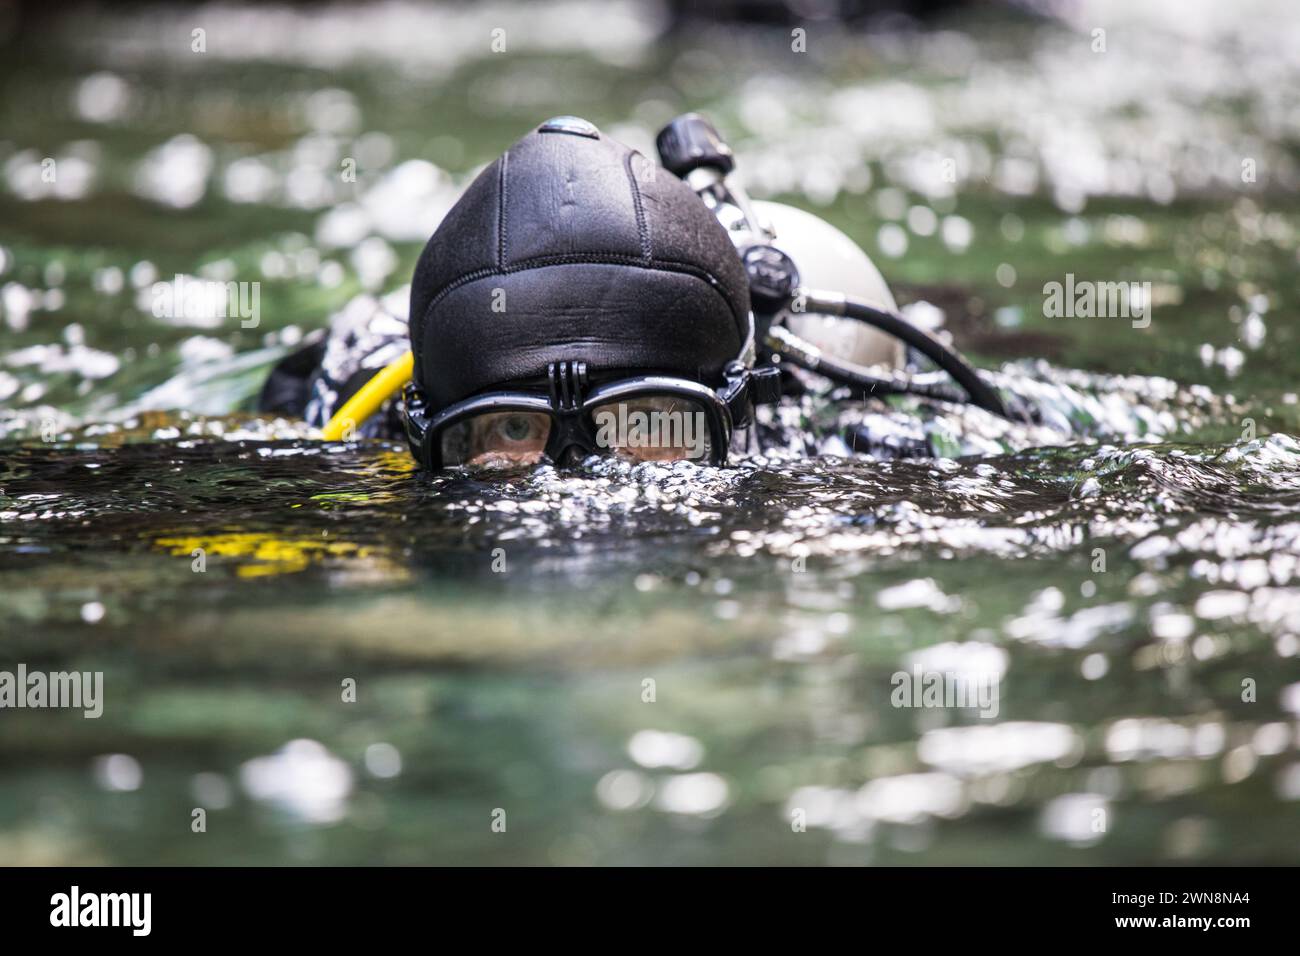 Suba subacquea superfici dopo un'immersione, occhiali protettivi per gli occhi Foto Stock